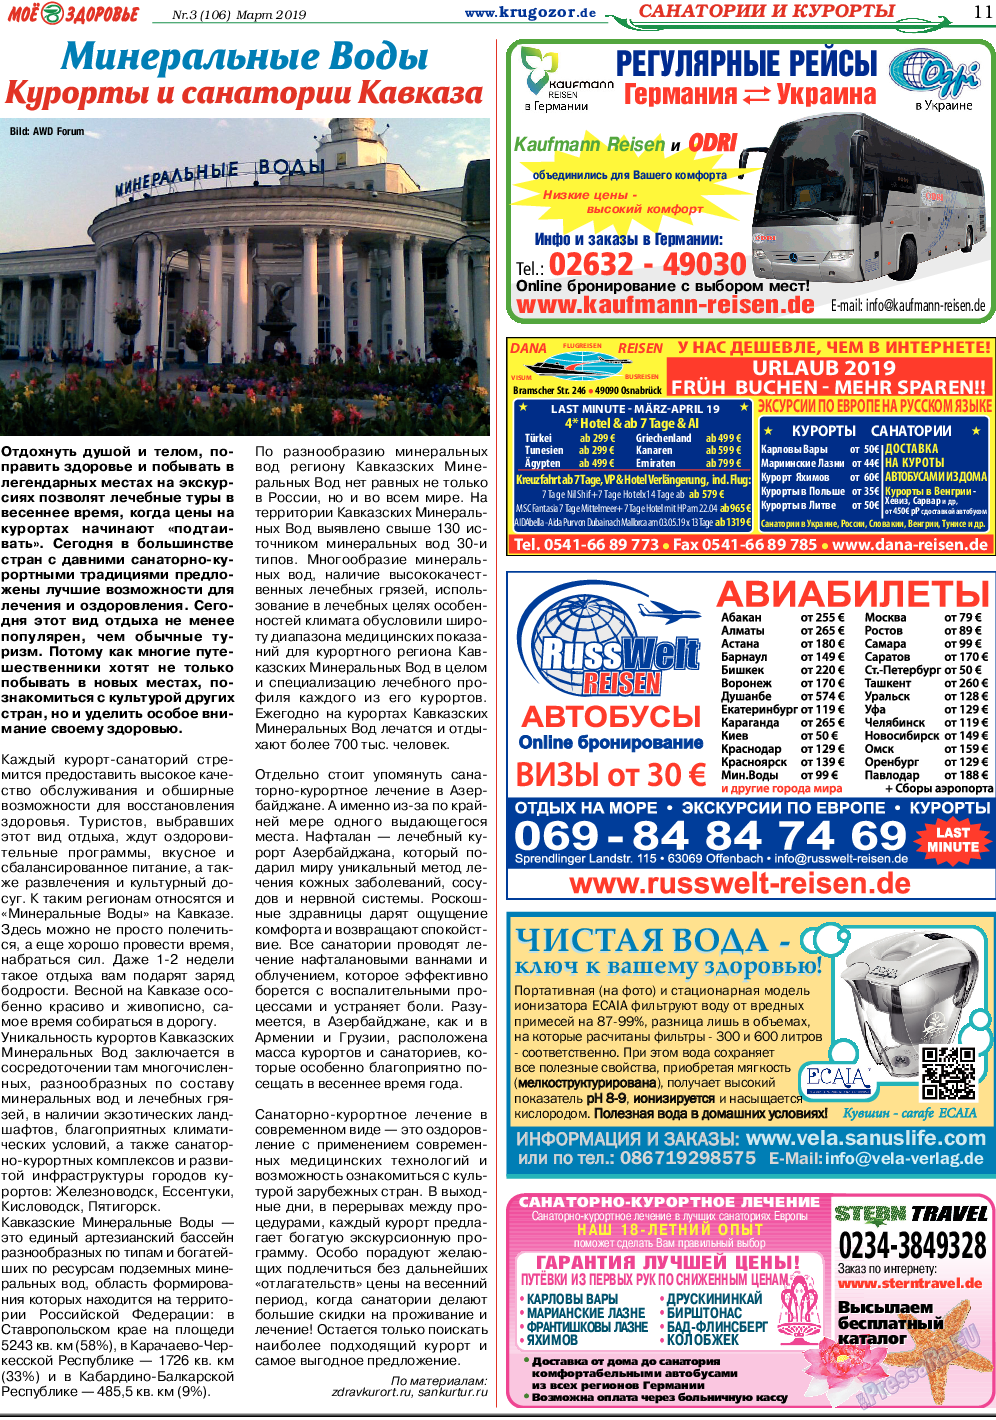 Кругозор, газета. 2019 №3 стр.11